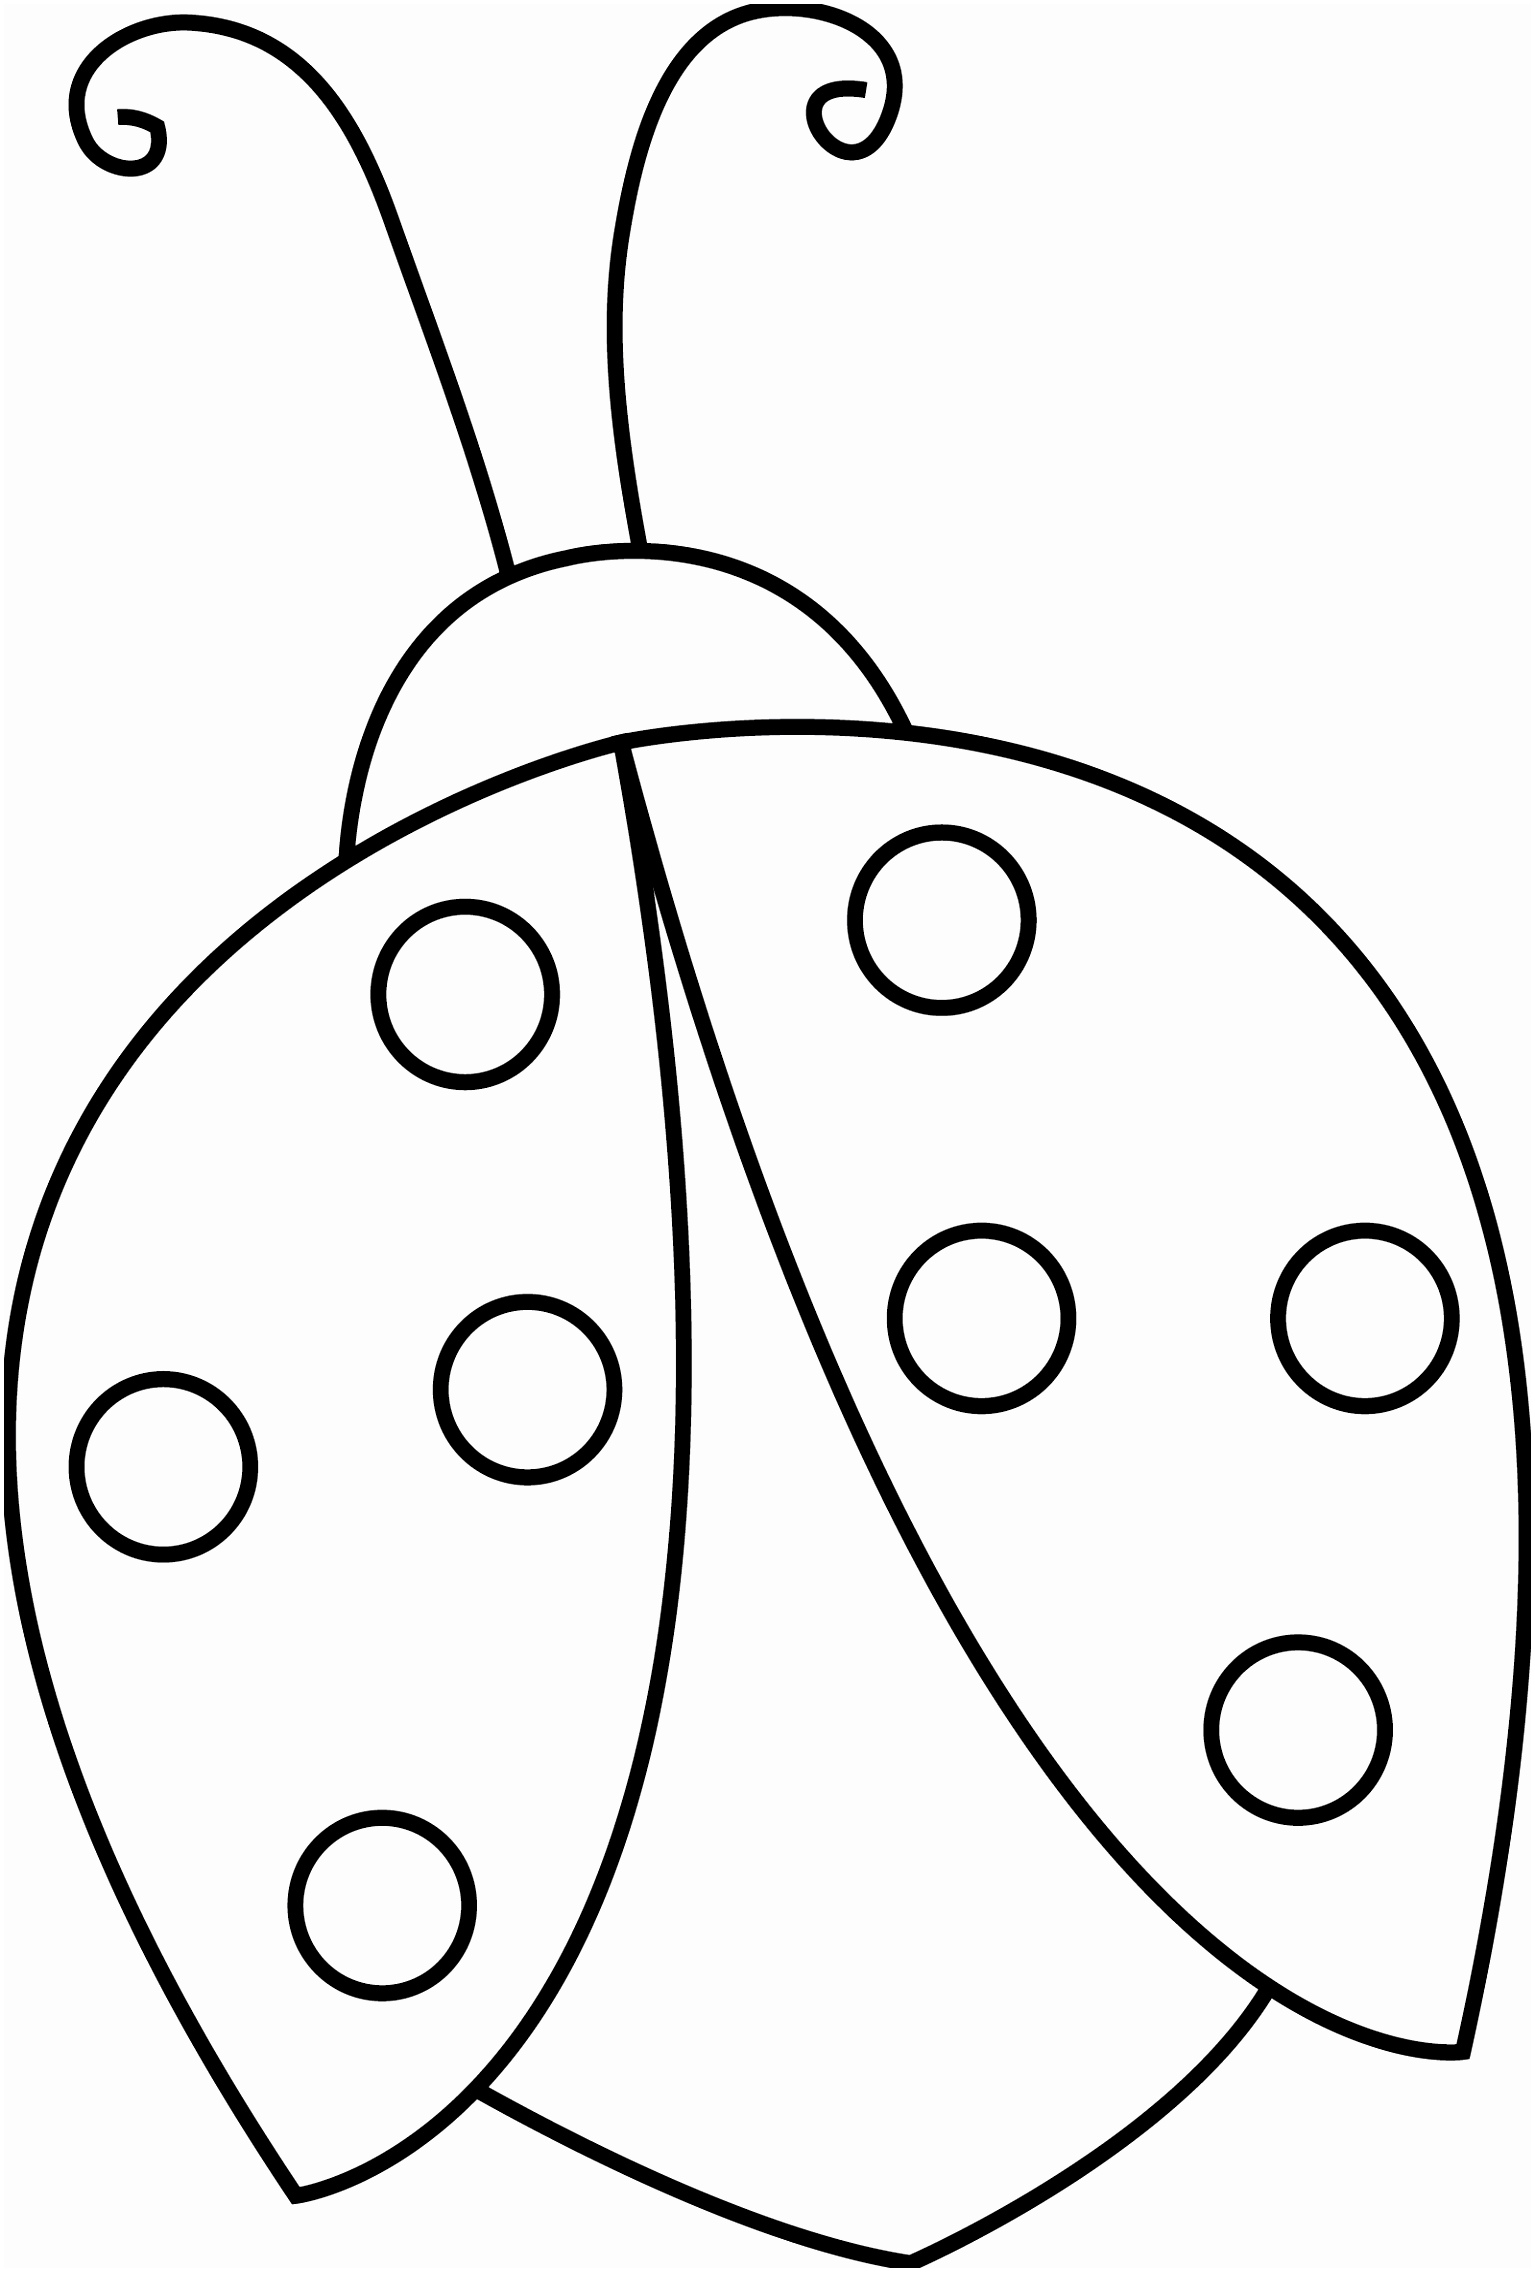 printable-ladybug-template-printable-templates-free